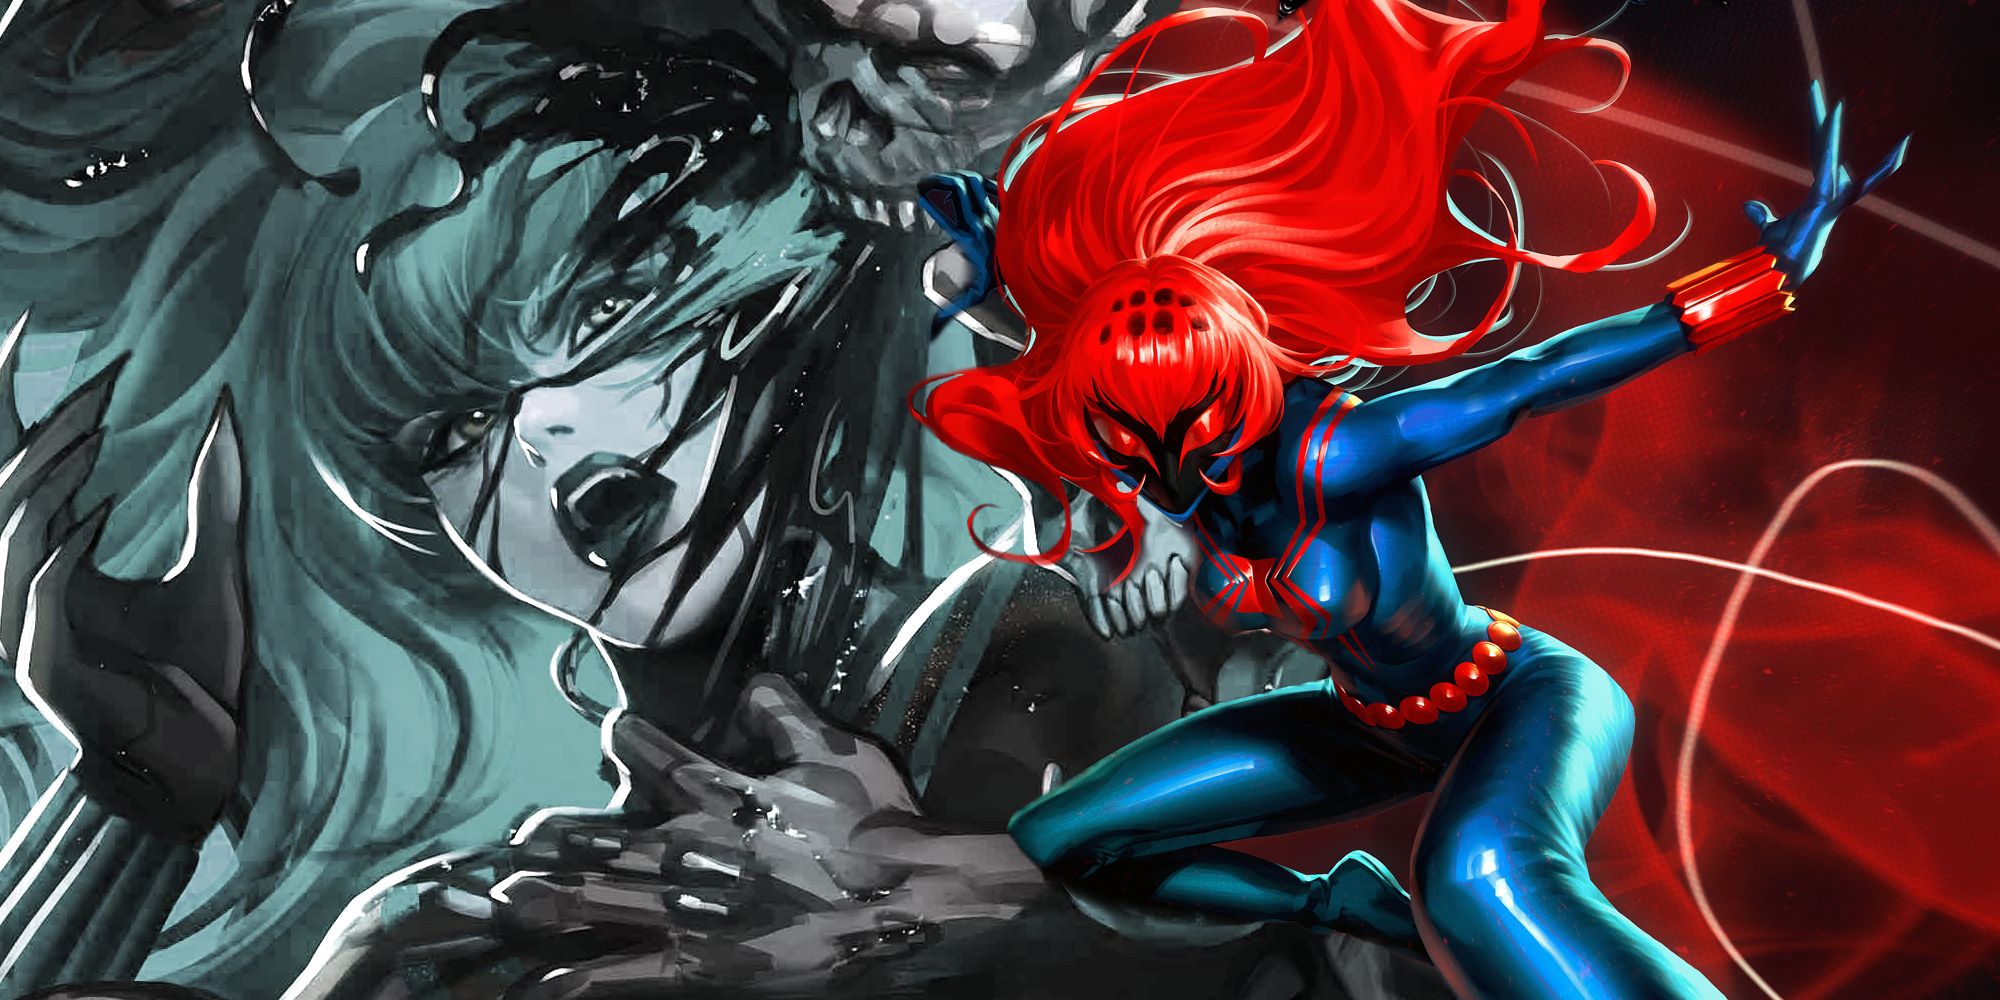 O simbionte da Viúva Negra sendo arrancado dela (esquerda); Viúva parecendo ferozmente vermelha e azul em seu traje simbionte (direita).